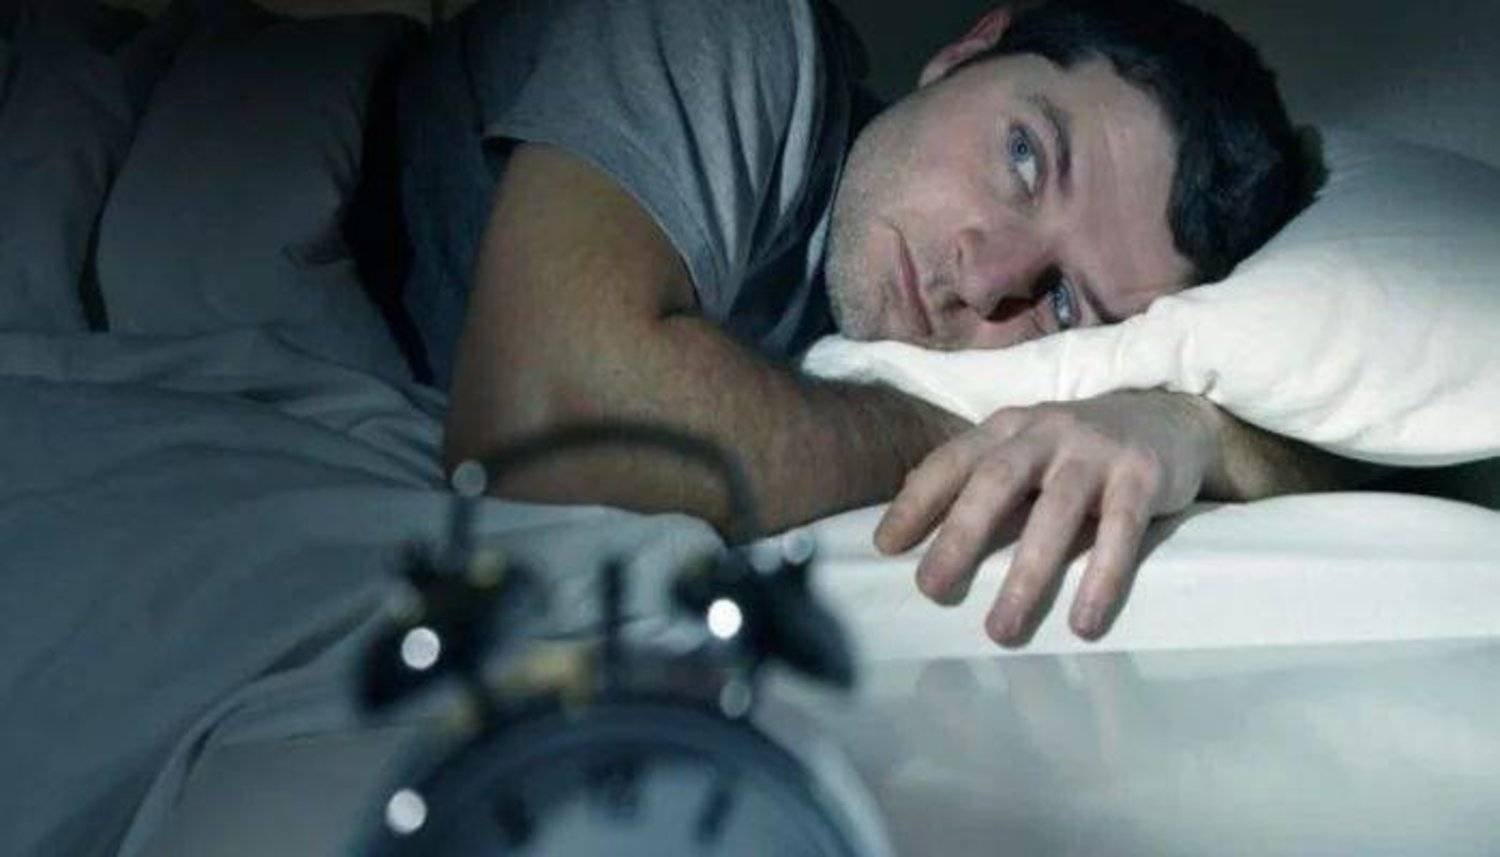 هناك مشكلات صحية خطيرة قد تنجم عن انقطاع النفس أثناء النوم (رويترز)